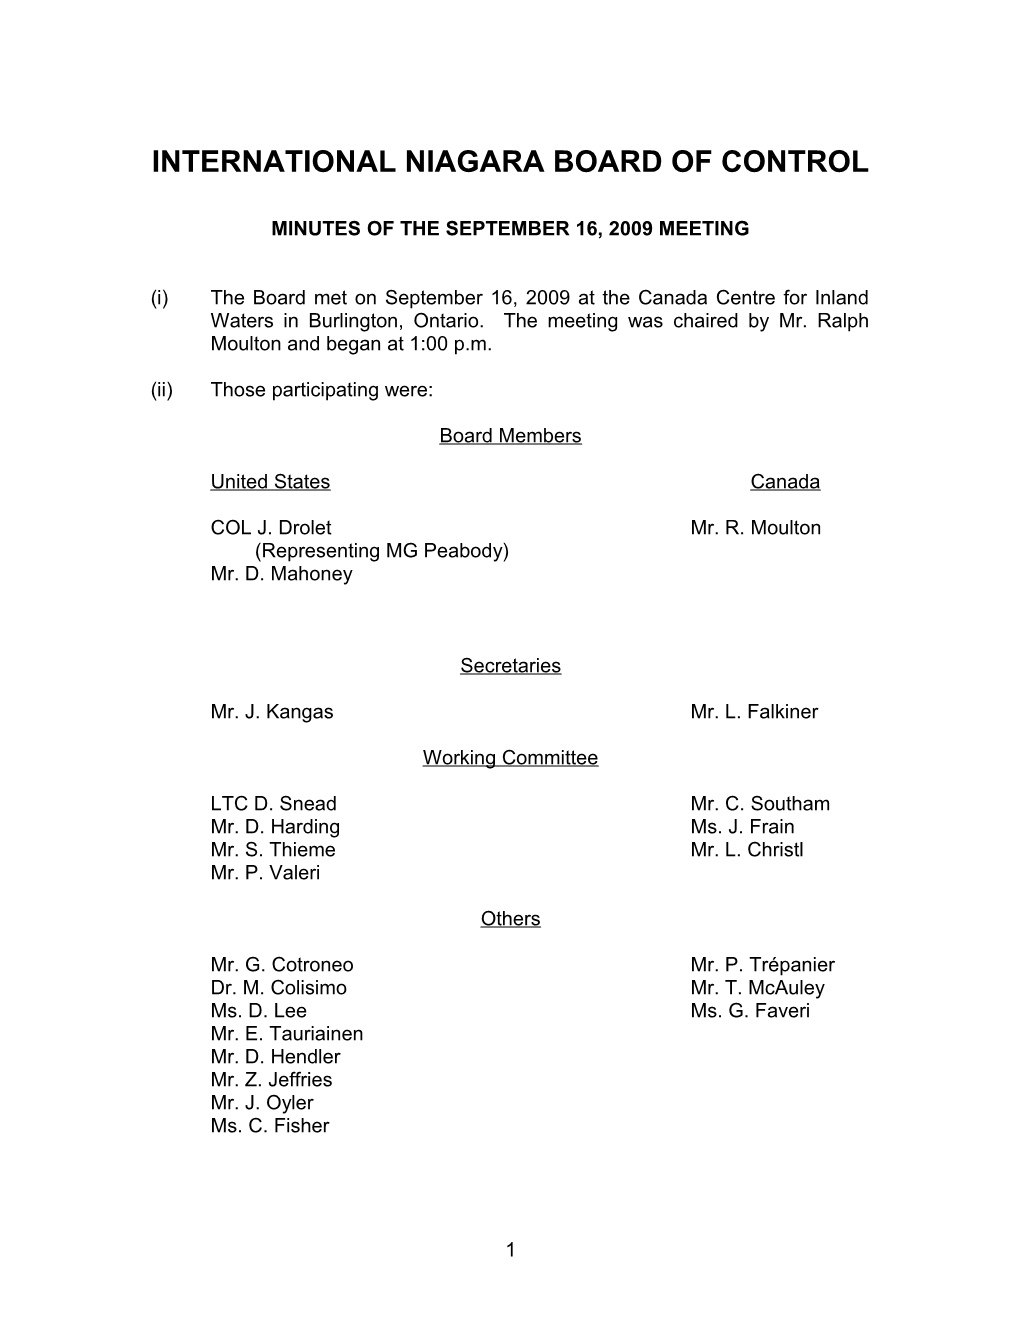 International Niagara Board of Control